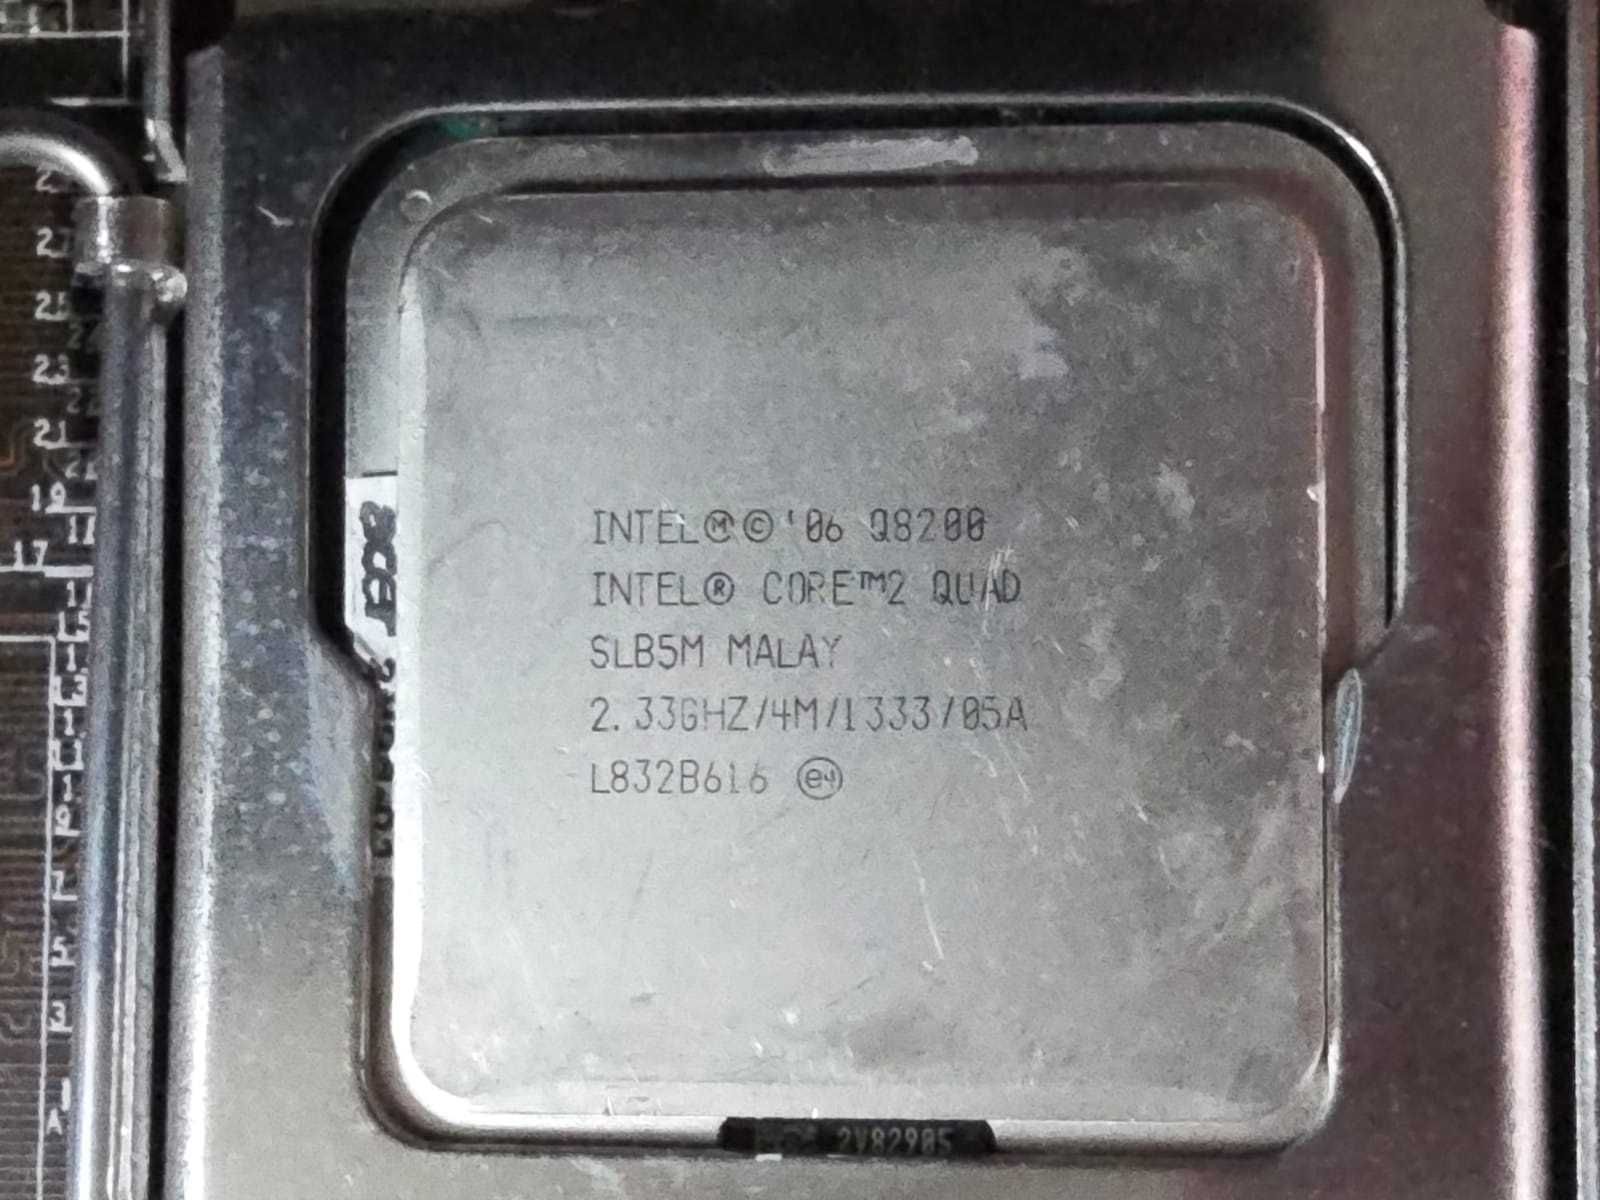 Placa de baza ASUS P5N73-AM, LGA775, DDR2 + Procesor Q8200